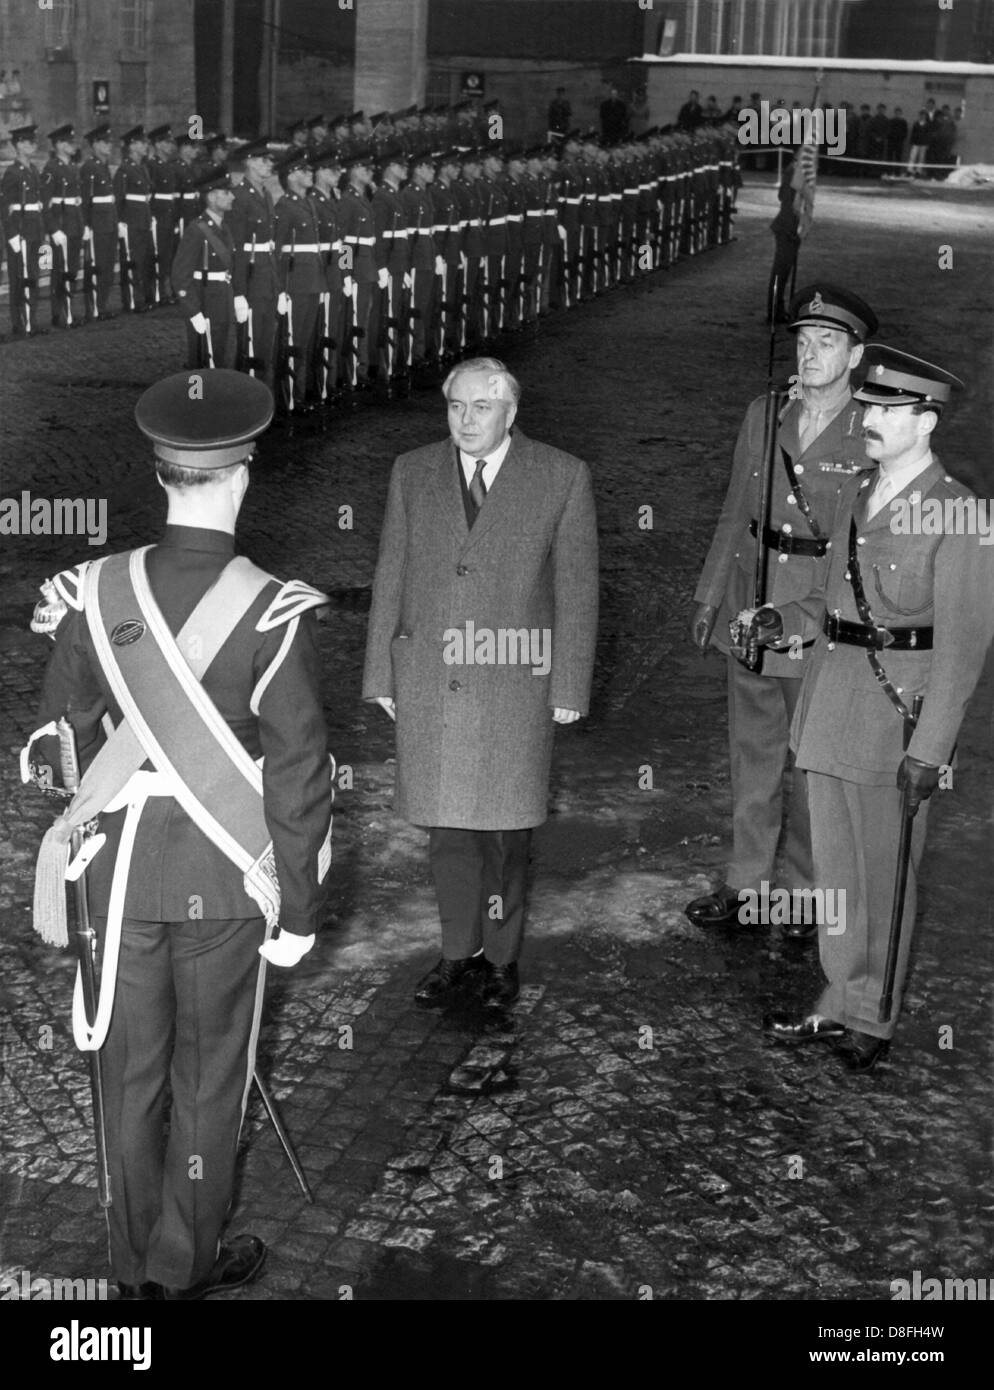 Britischer Premierminister Harold Wilson ist durch eine ehrenamtliche Ausbildung vor dem britischen Hauptquartier in Berlin am 6. März 1965 erhielt. Stockfoto